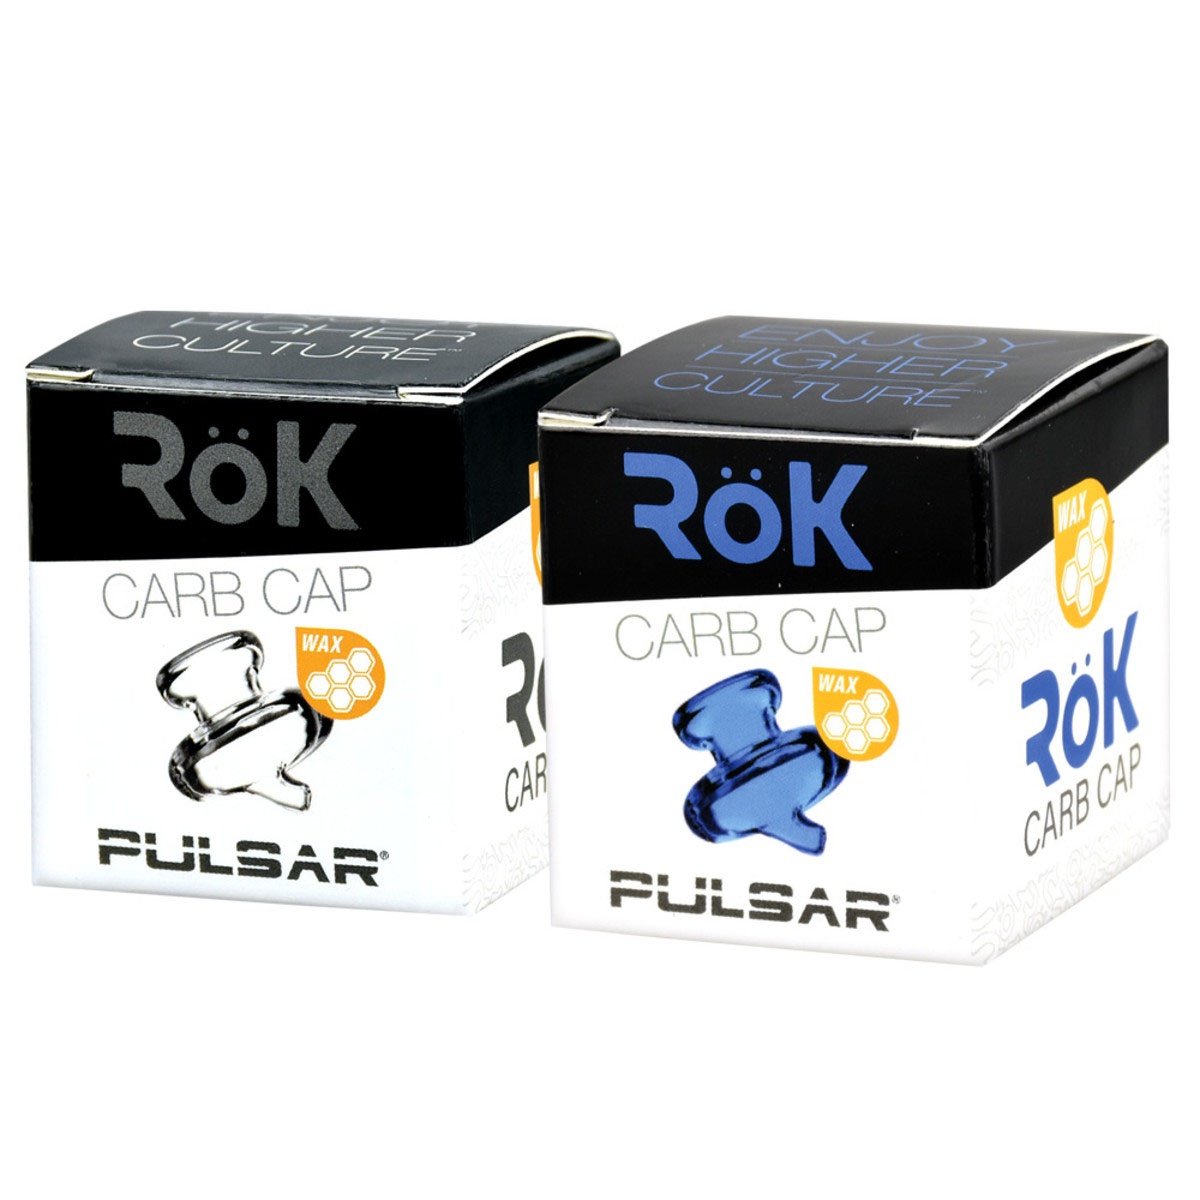 Pulsar RoK Wax Carb Cap Clear